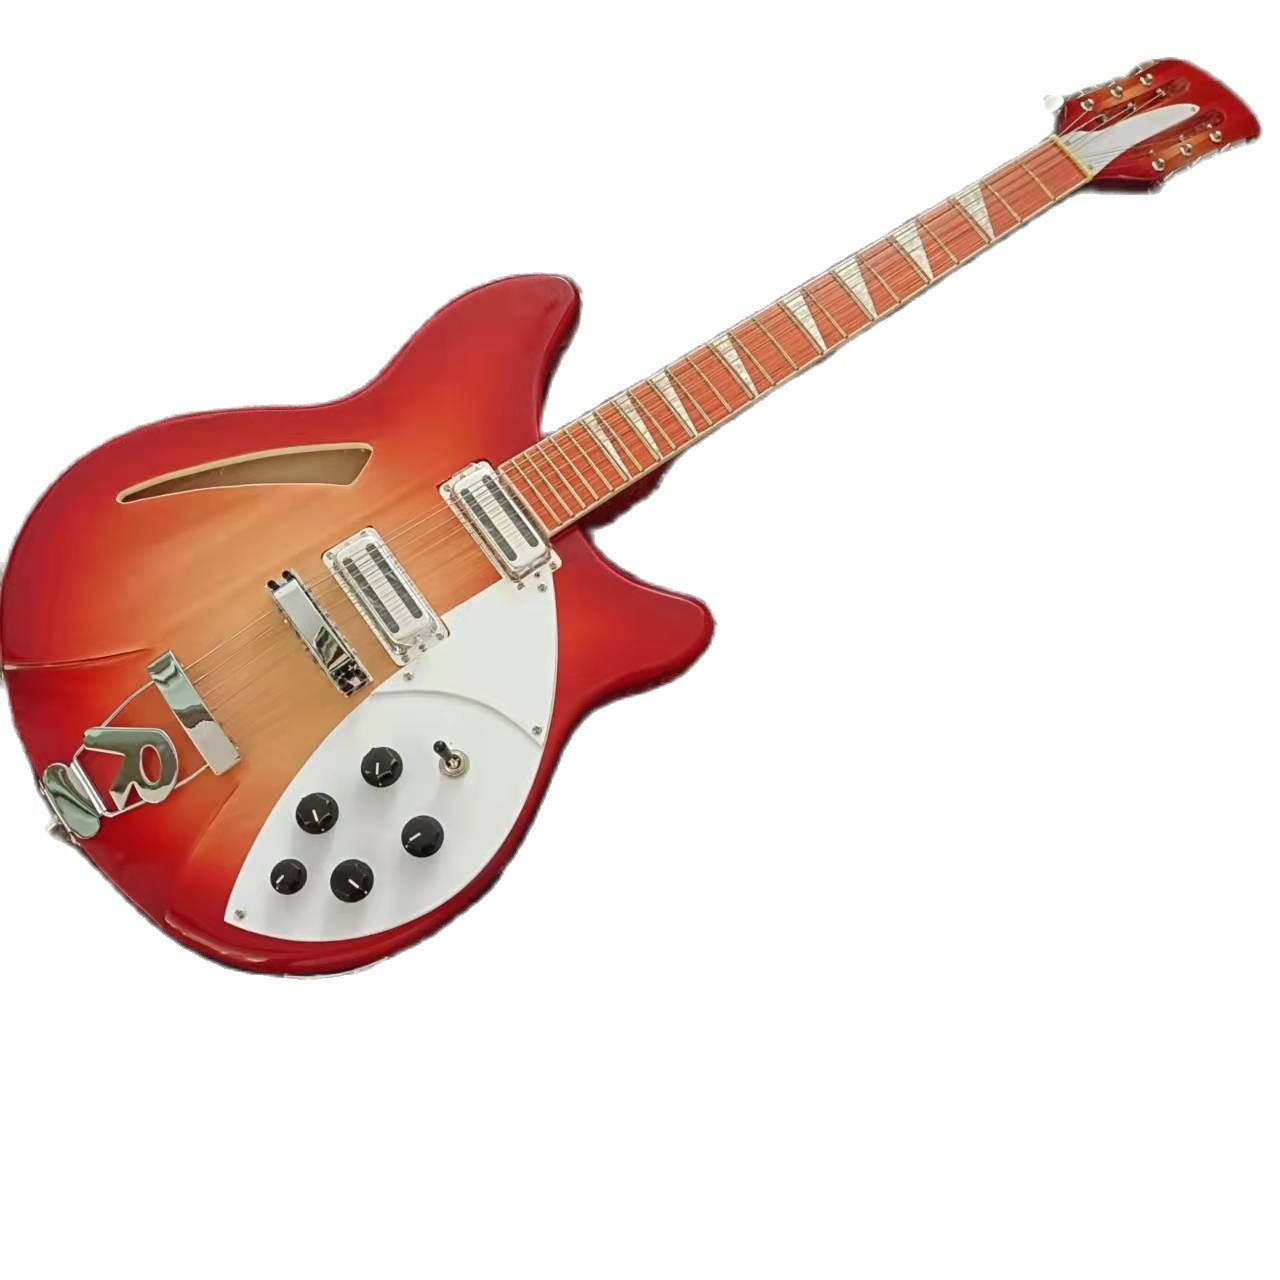 モデル360ギター